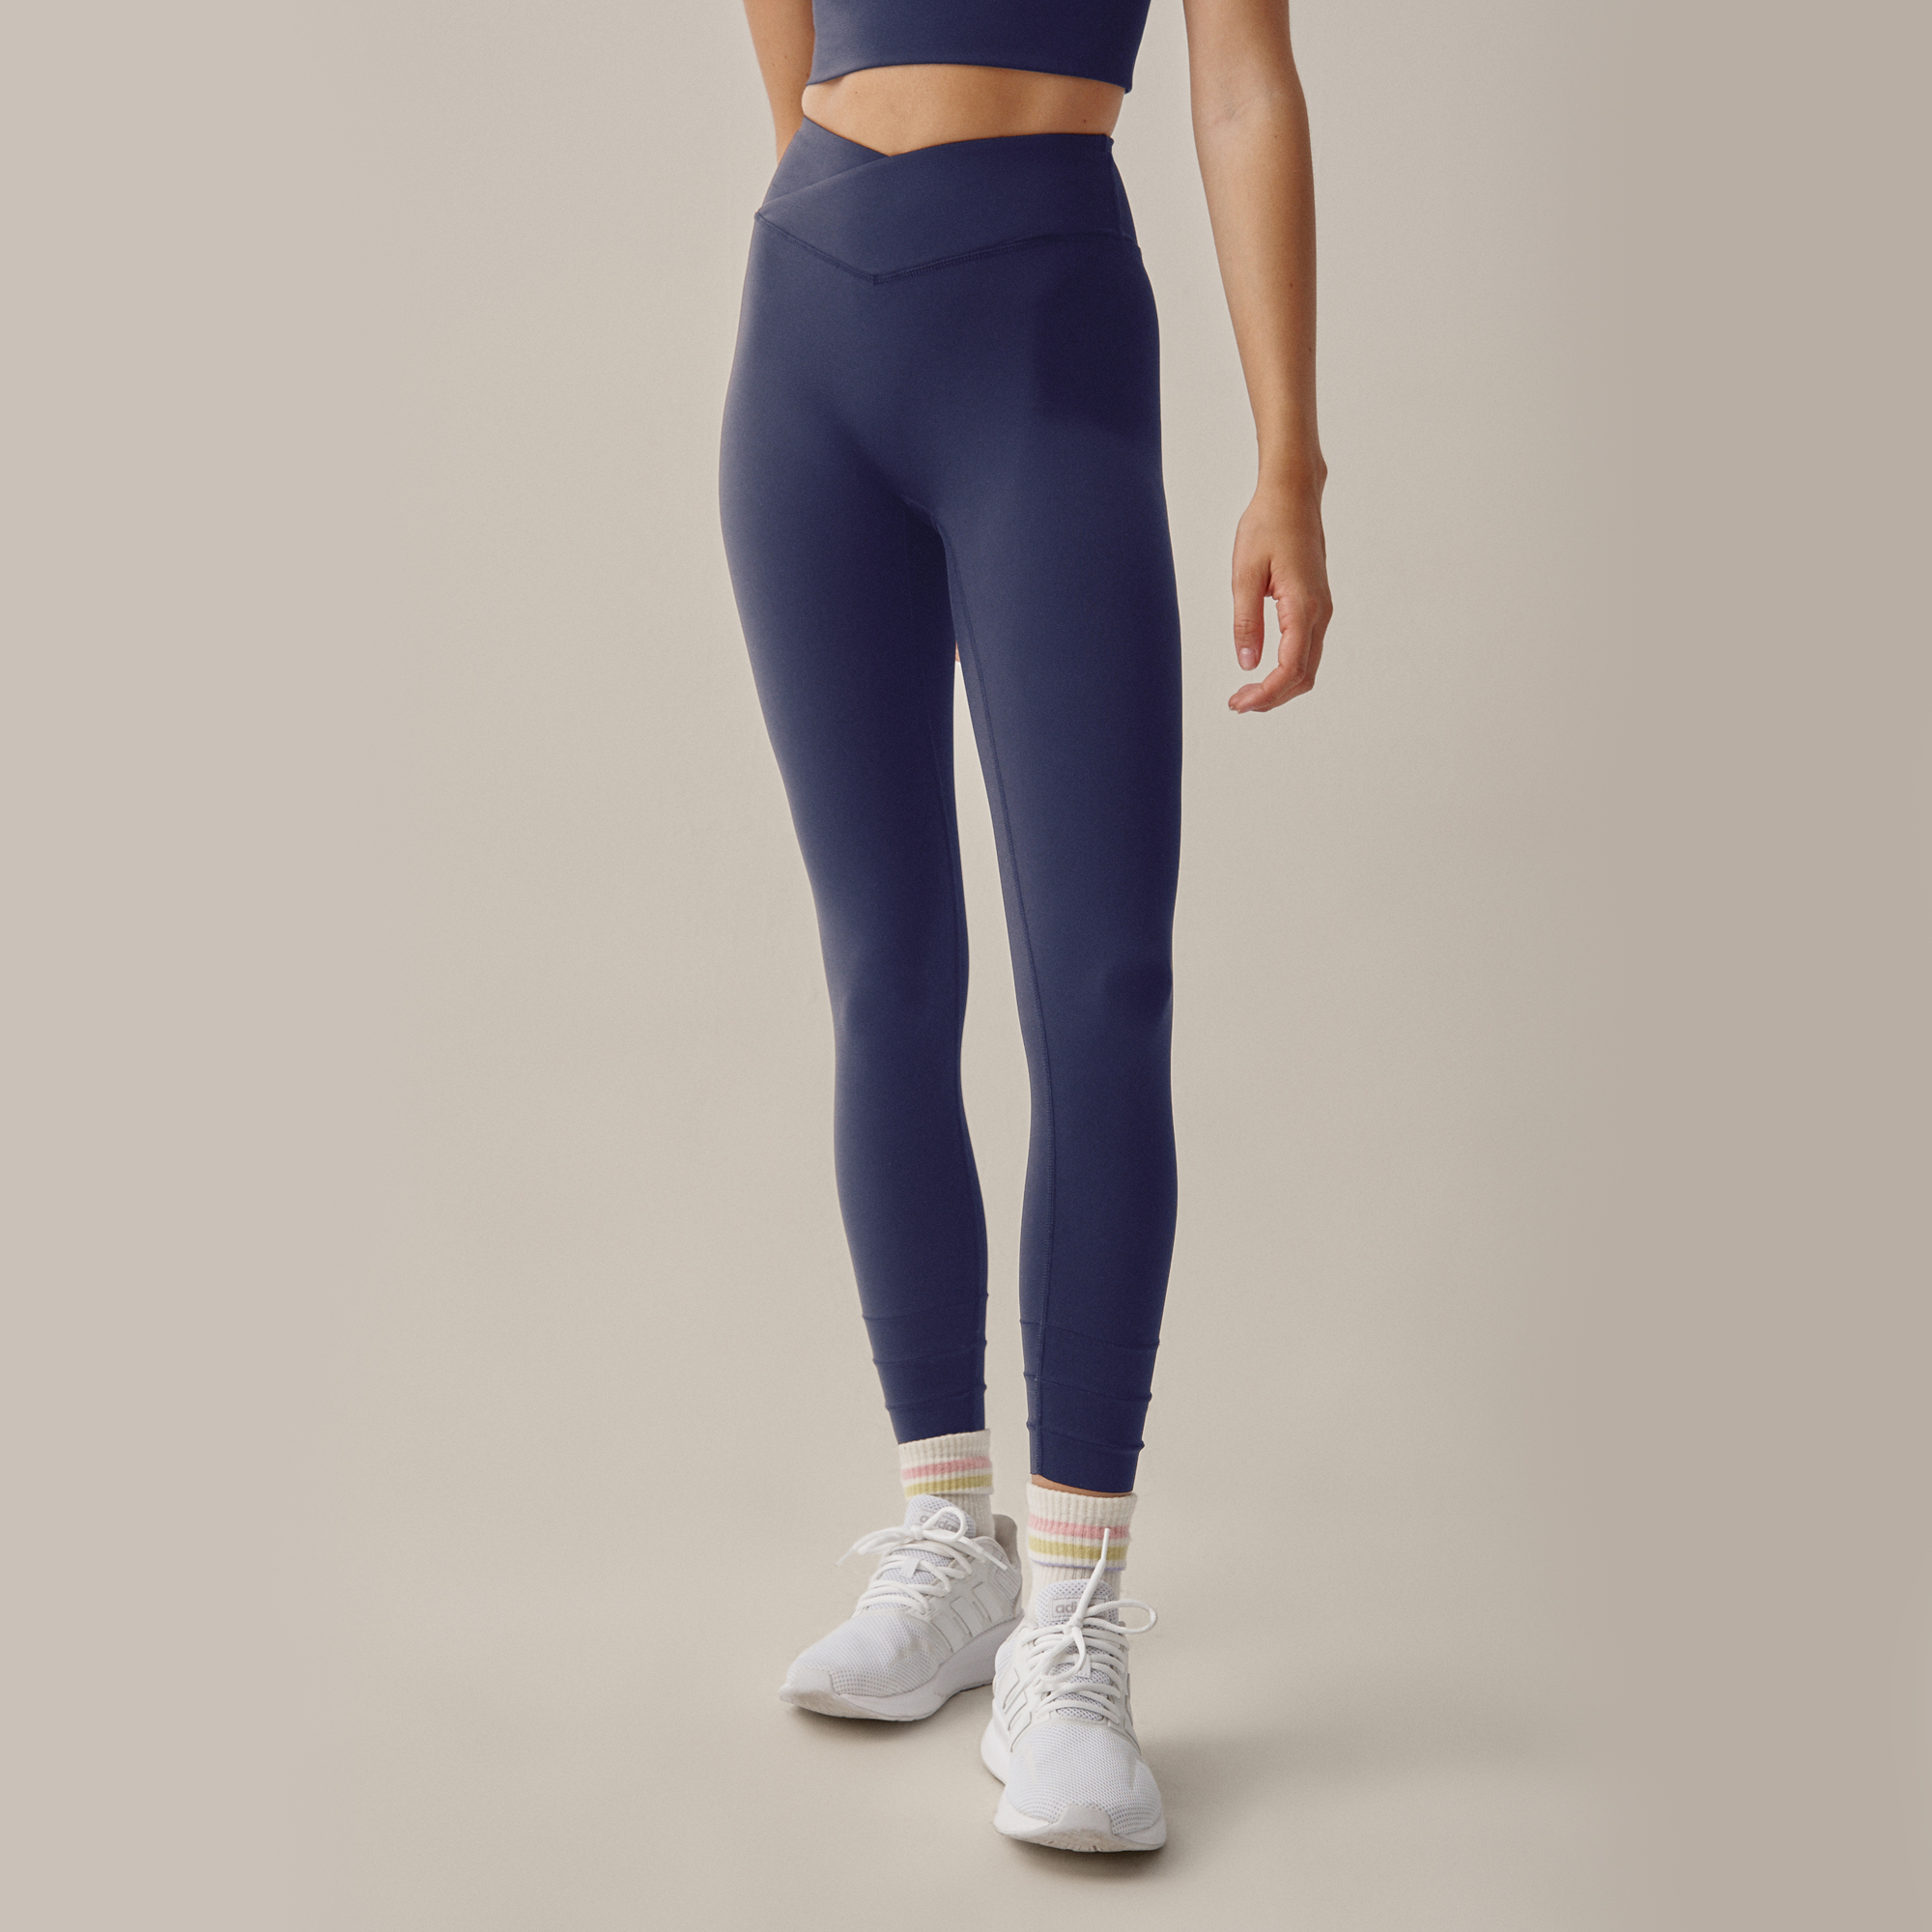 Mallas y leggings deportivos mujer, Nueva colección